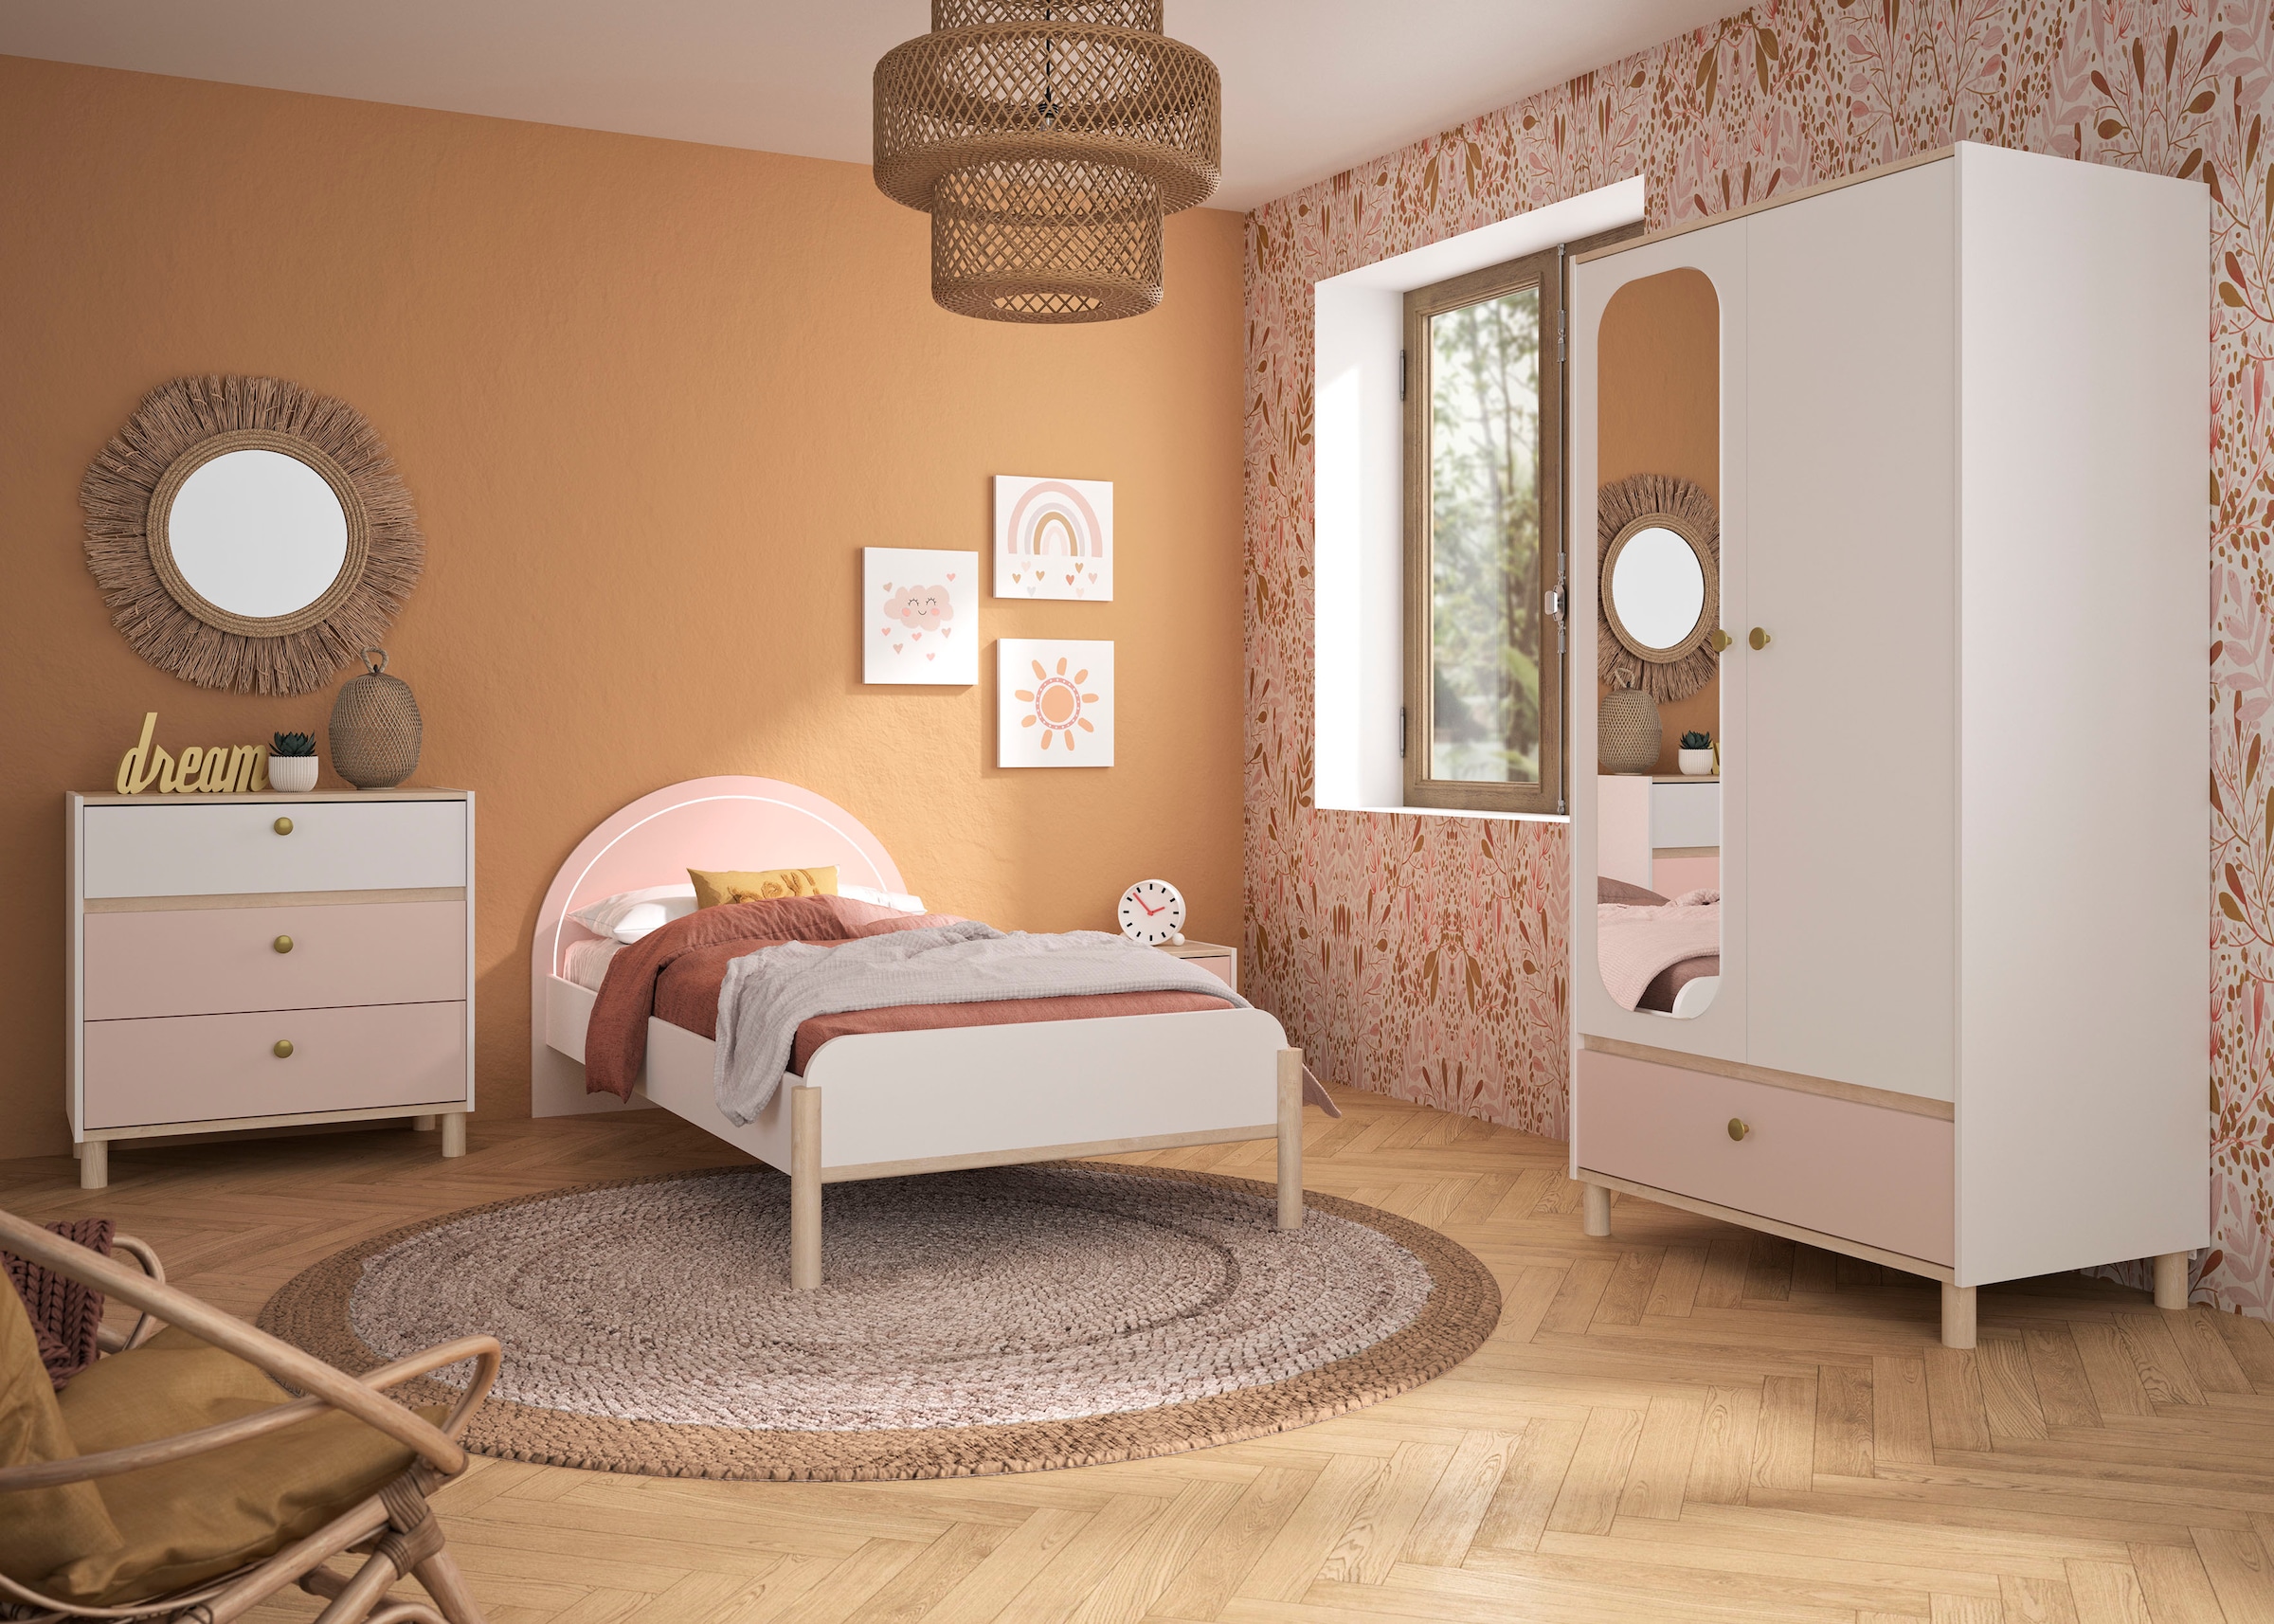 Gami Jugendbett »Einzelbett, Kinderbett, mit LED-Beleuchtung am Kopfteil, 90x200 cm«, Elegantes Design für eine sanfte und feminine Atmosphäre.